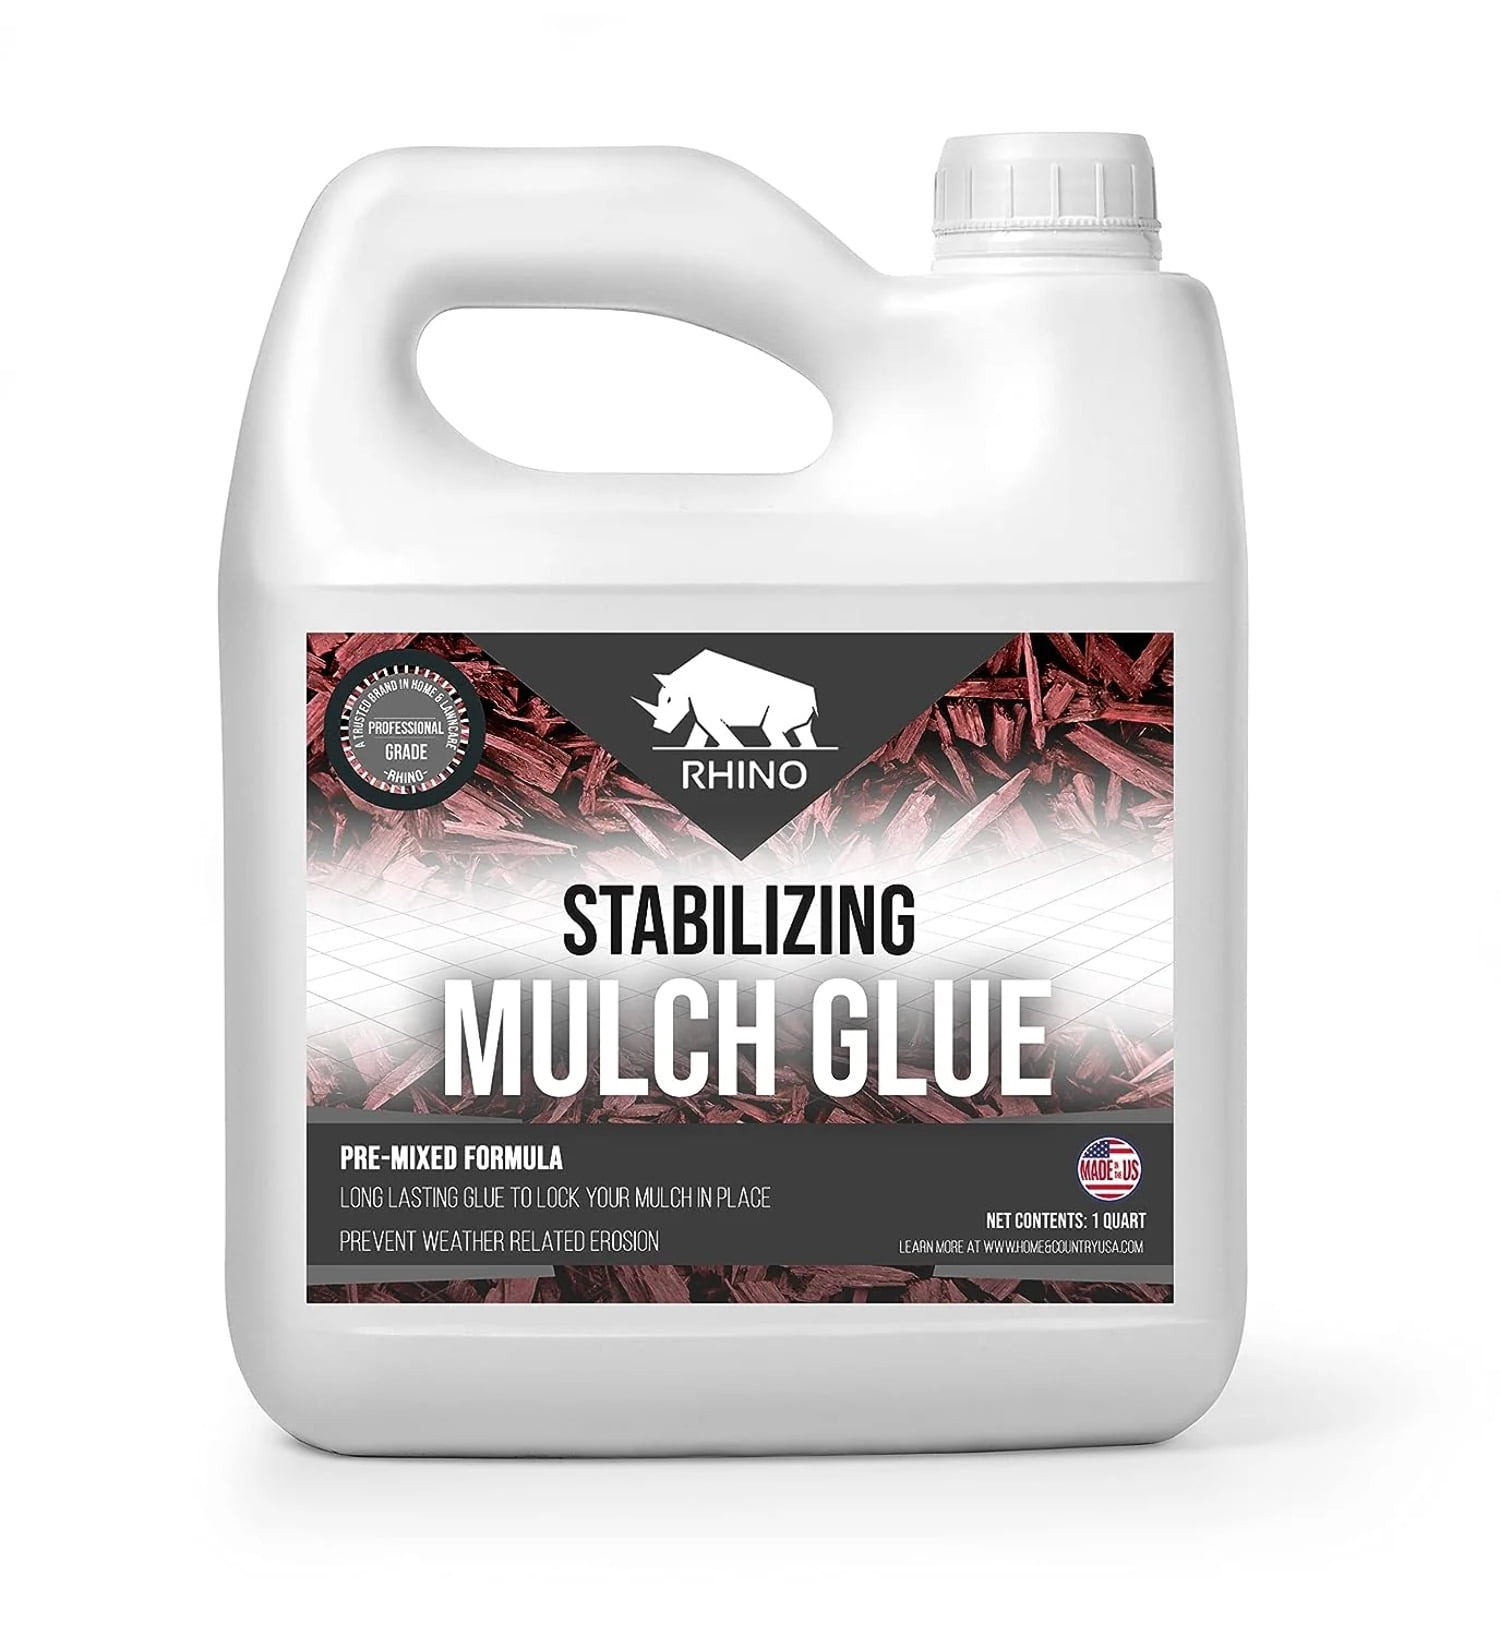 What is Mulch Glue? - Mulch Glue